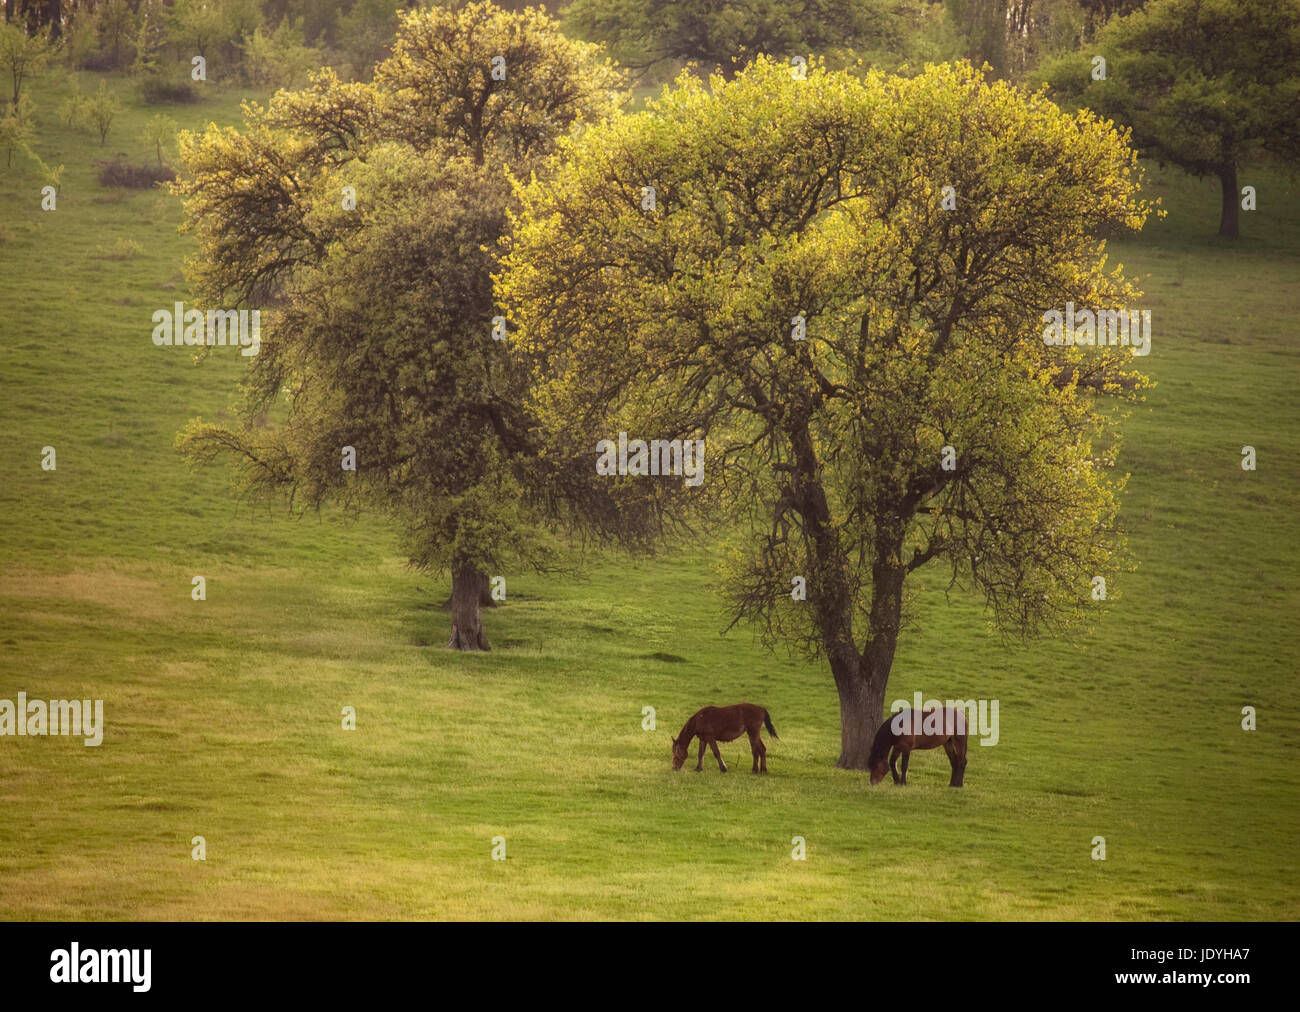 wilde Pferde weiden auf grüner Wiese neben einem Baum, Sommerlandschaft Stockfoto